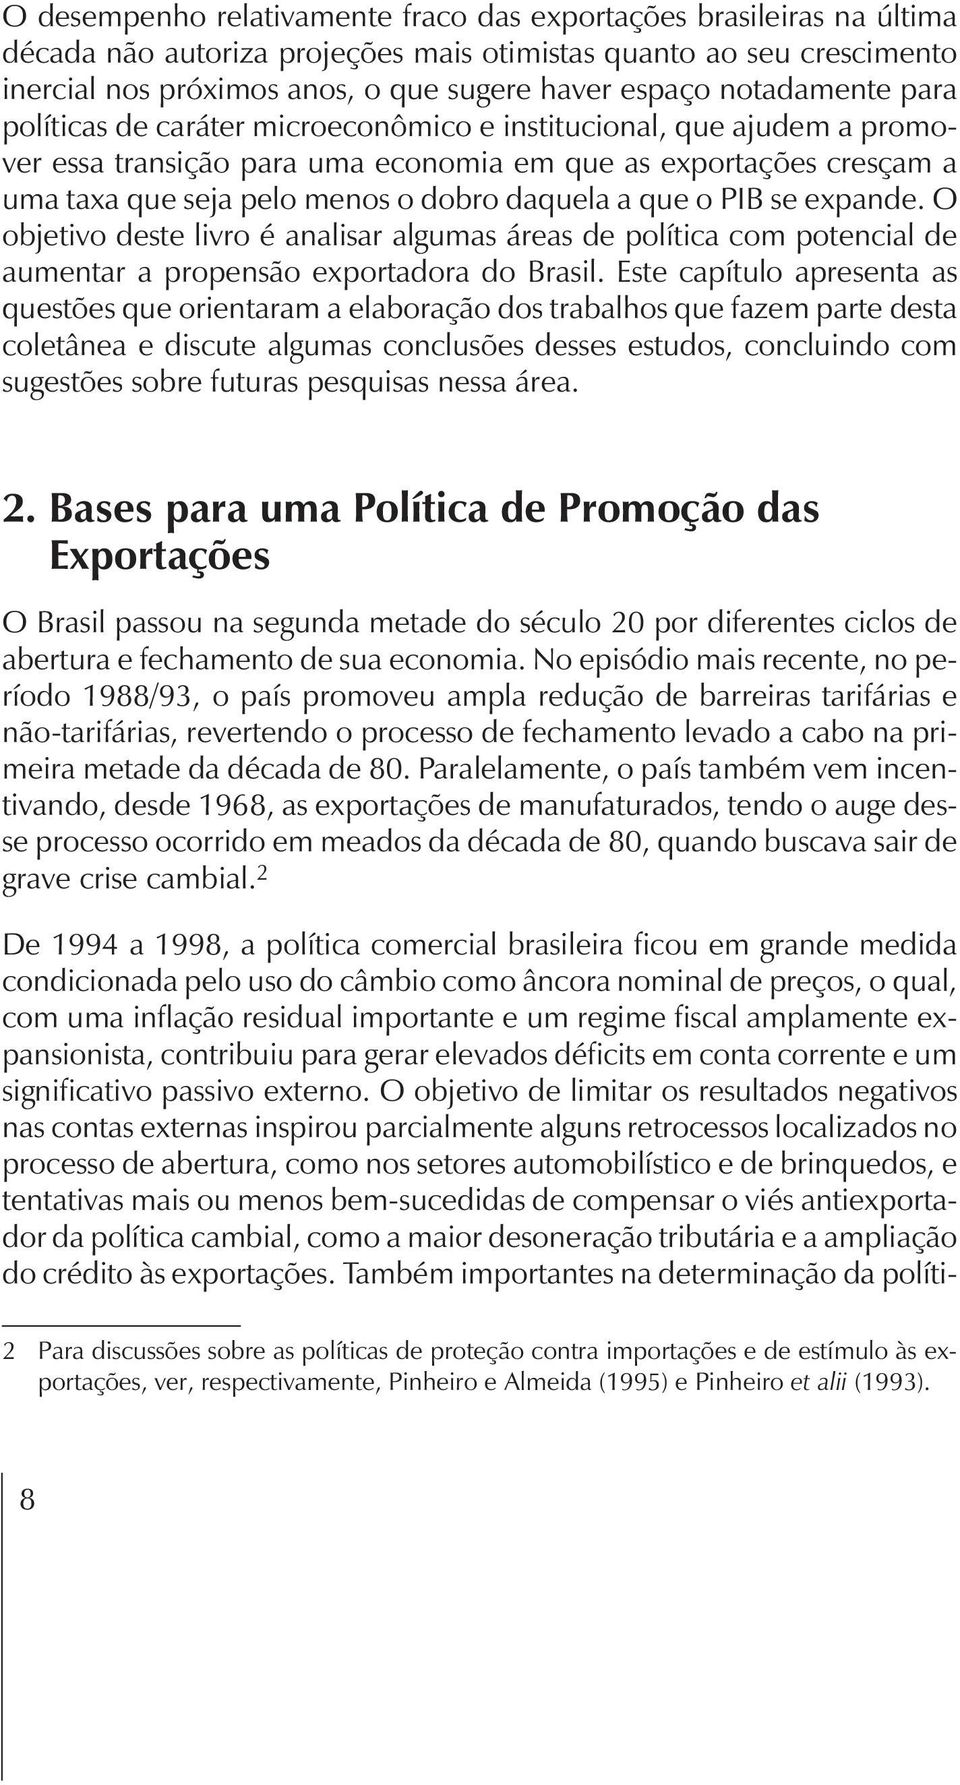 daquela a que o PIB se expande. O objetivo deste livro é analisar algumas áreas de política com potencial de aumentar a propensão exportadora do Brasil.